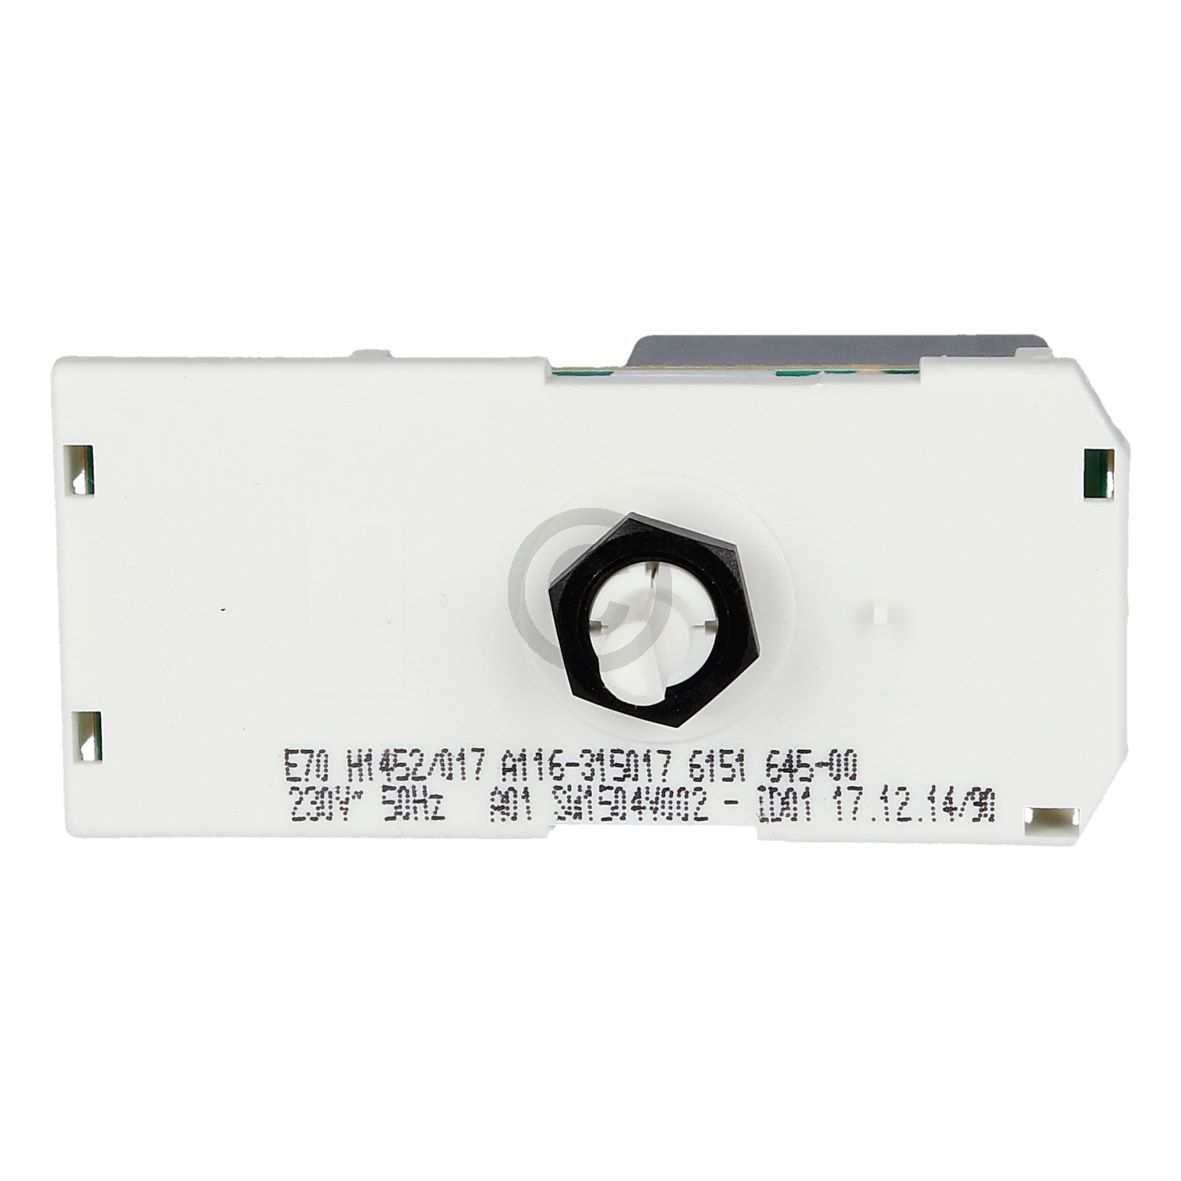 Thermostat elektronisch LIEBHERR 6151645 für Kühlschrank